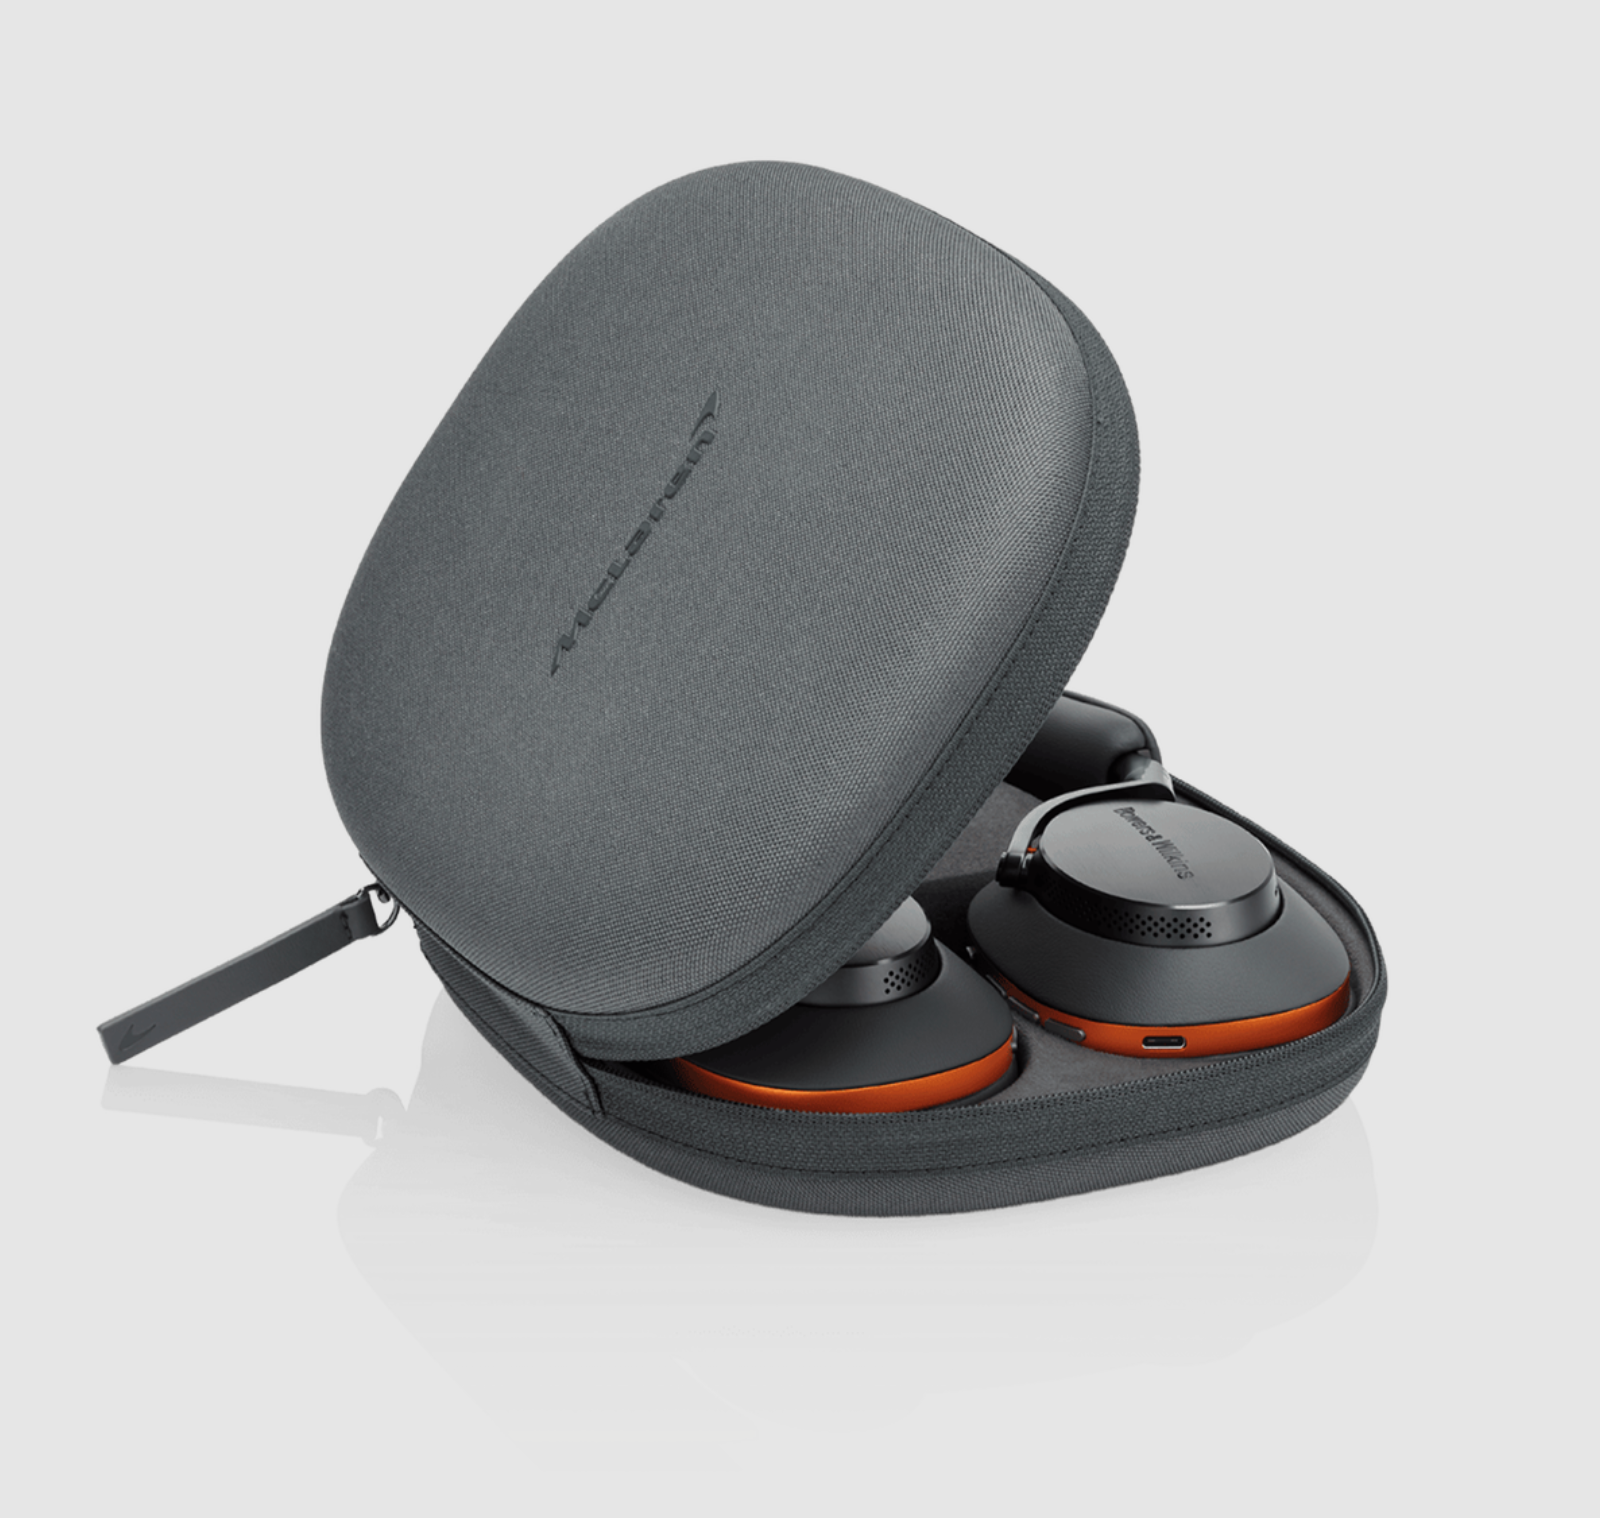 B&W Px8 McLaren Edition Noise Cancelling Headphones, image shows case